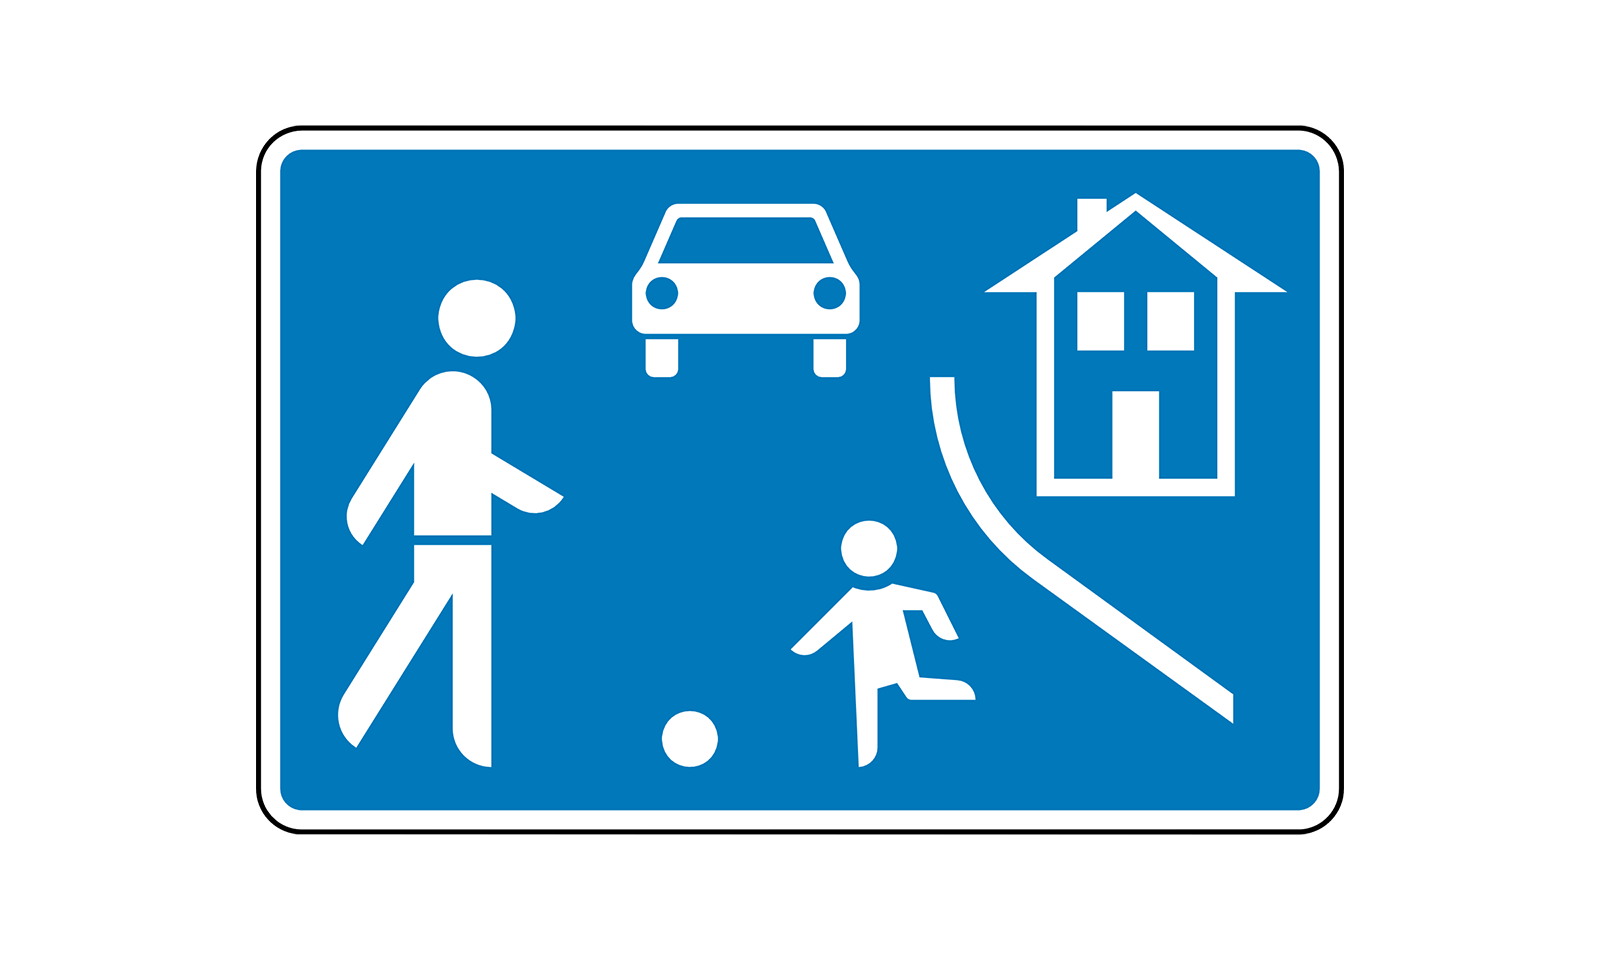 Was müssen Sie bei diesem Verkehrszeichen beachten? 